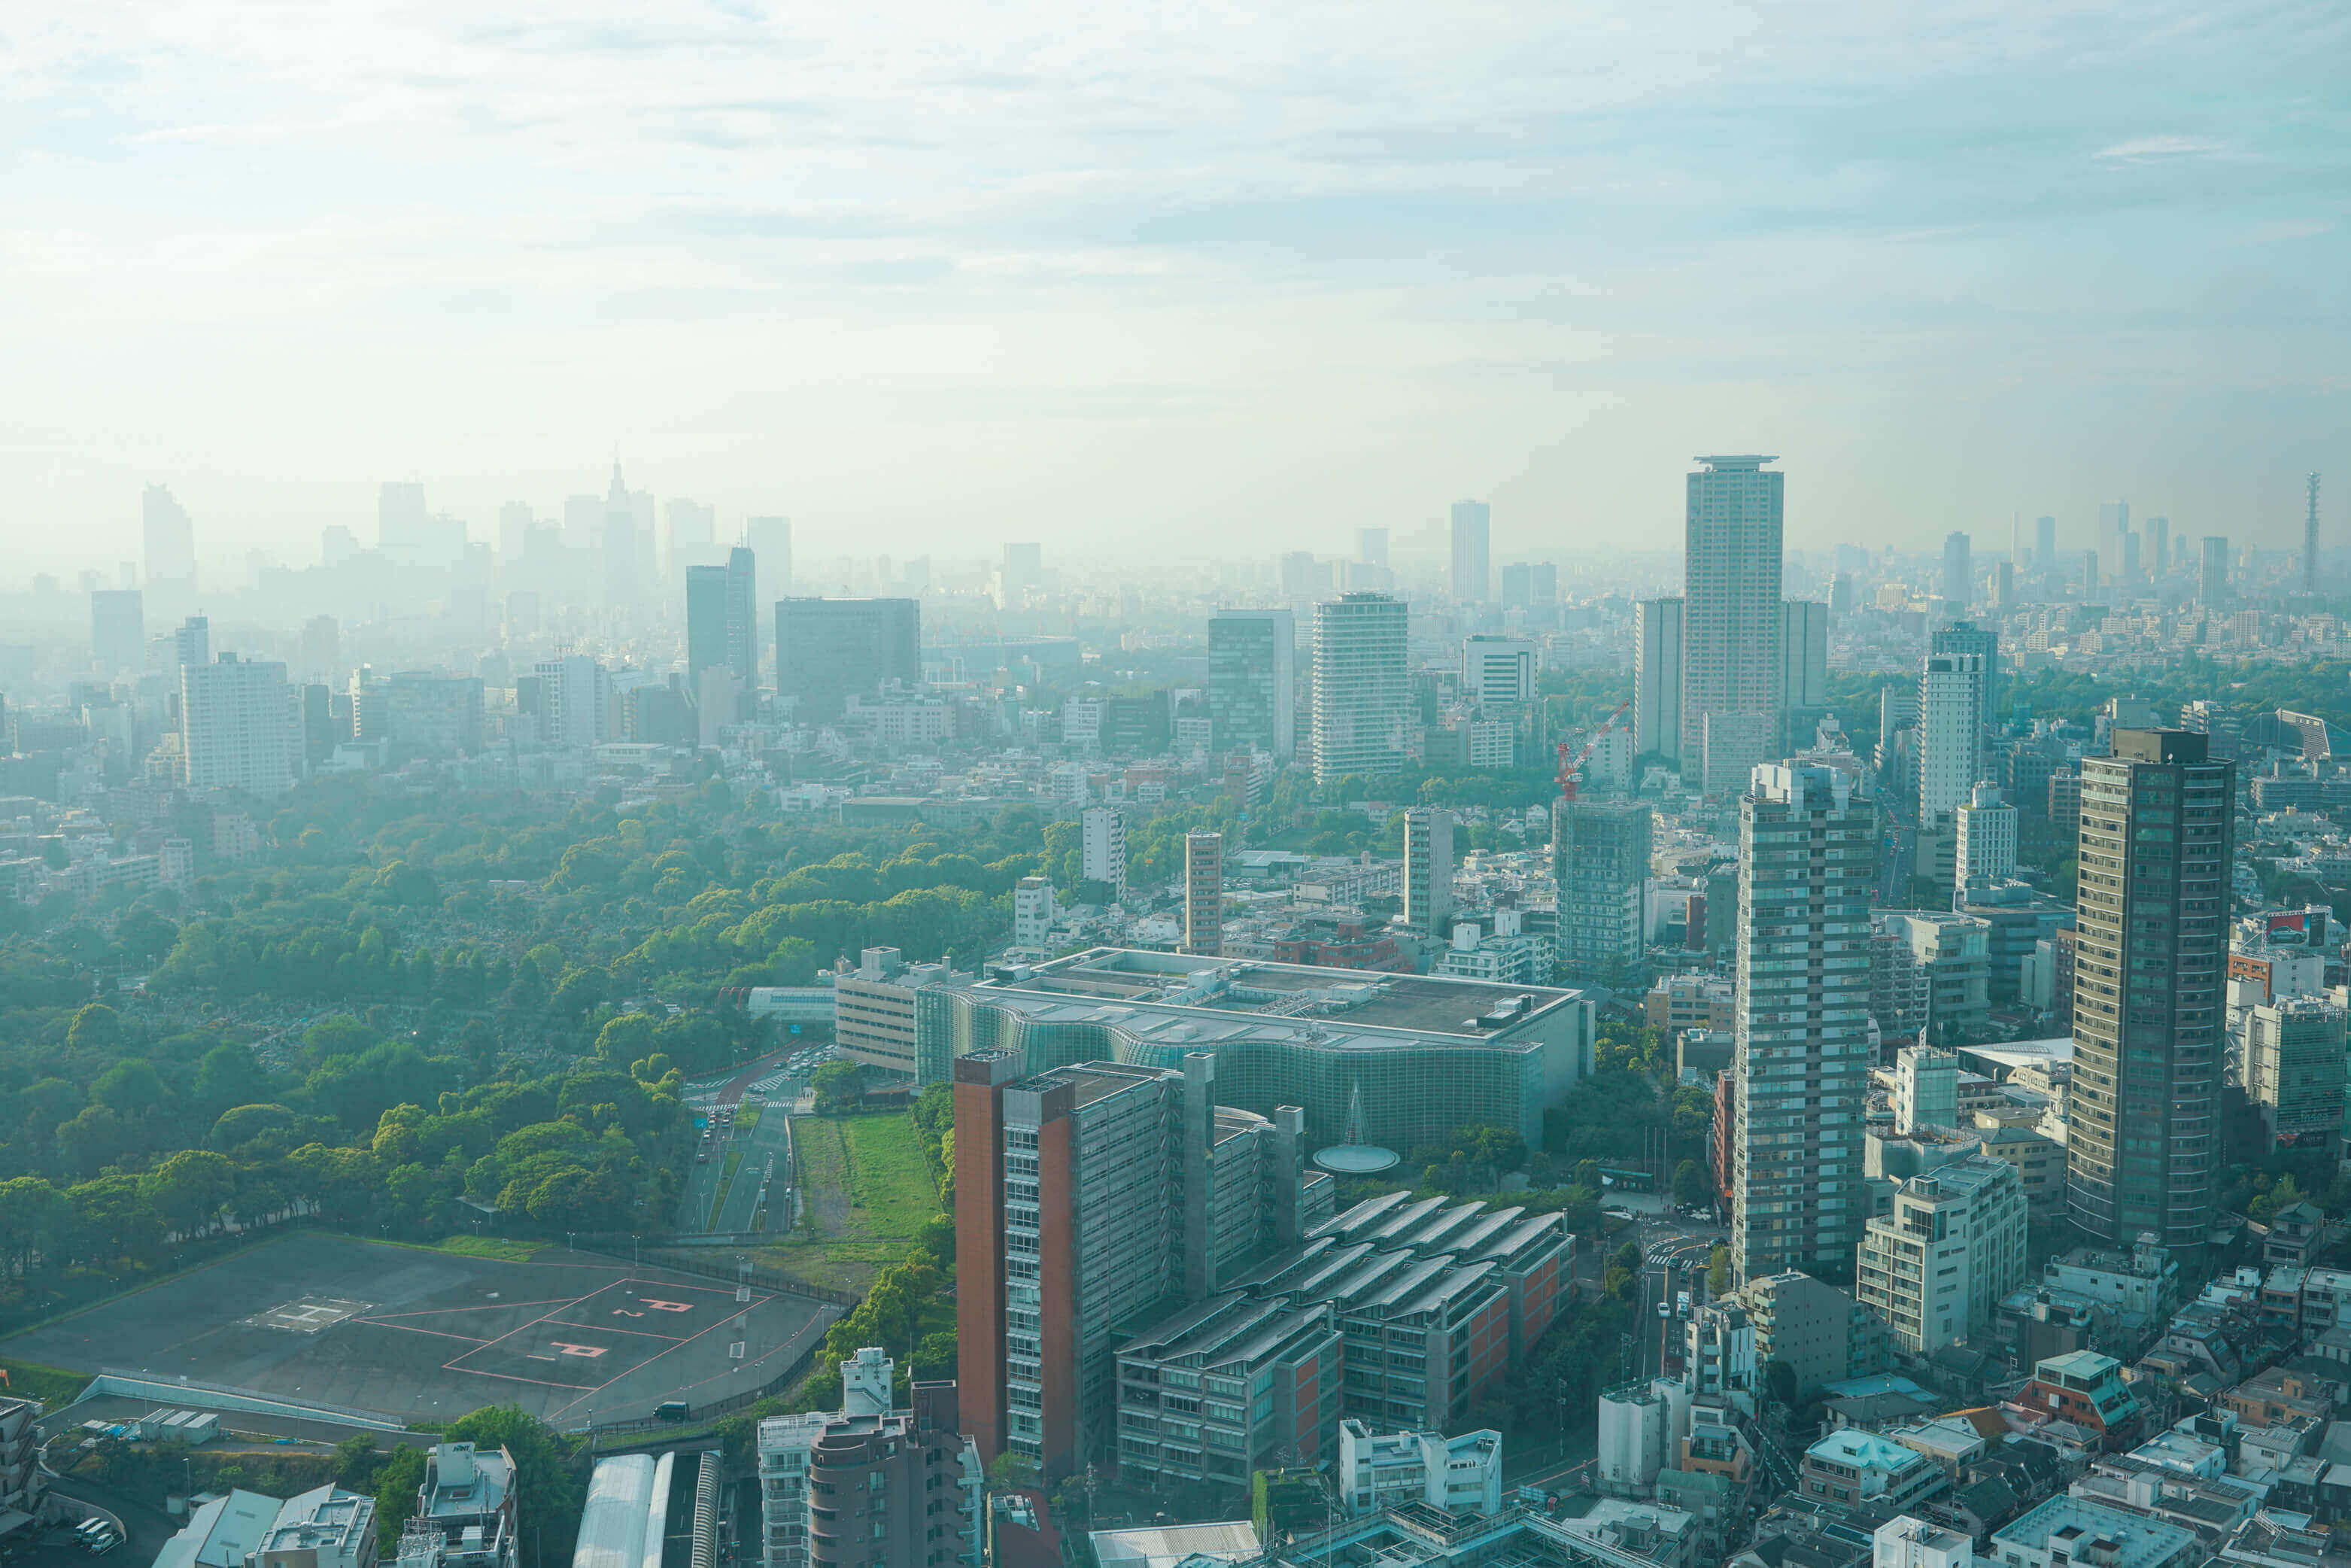 赤坂の東京新美術館を中心として周りに広がる緑を高層ビルから見下ろす形で撮影した写真